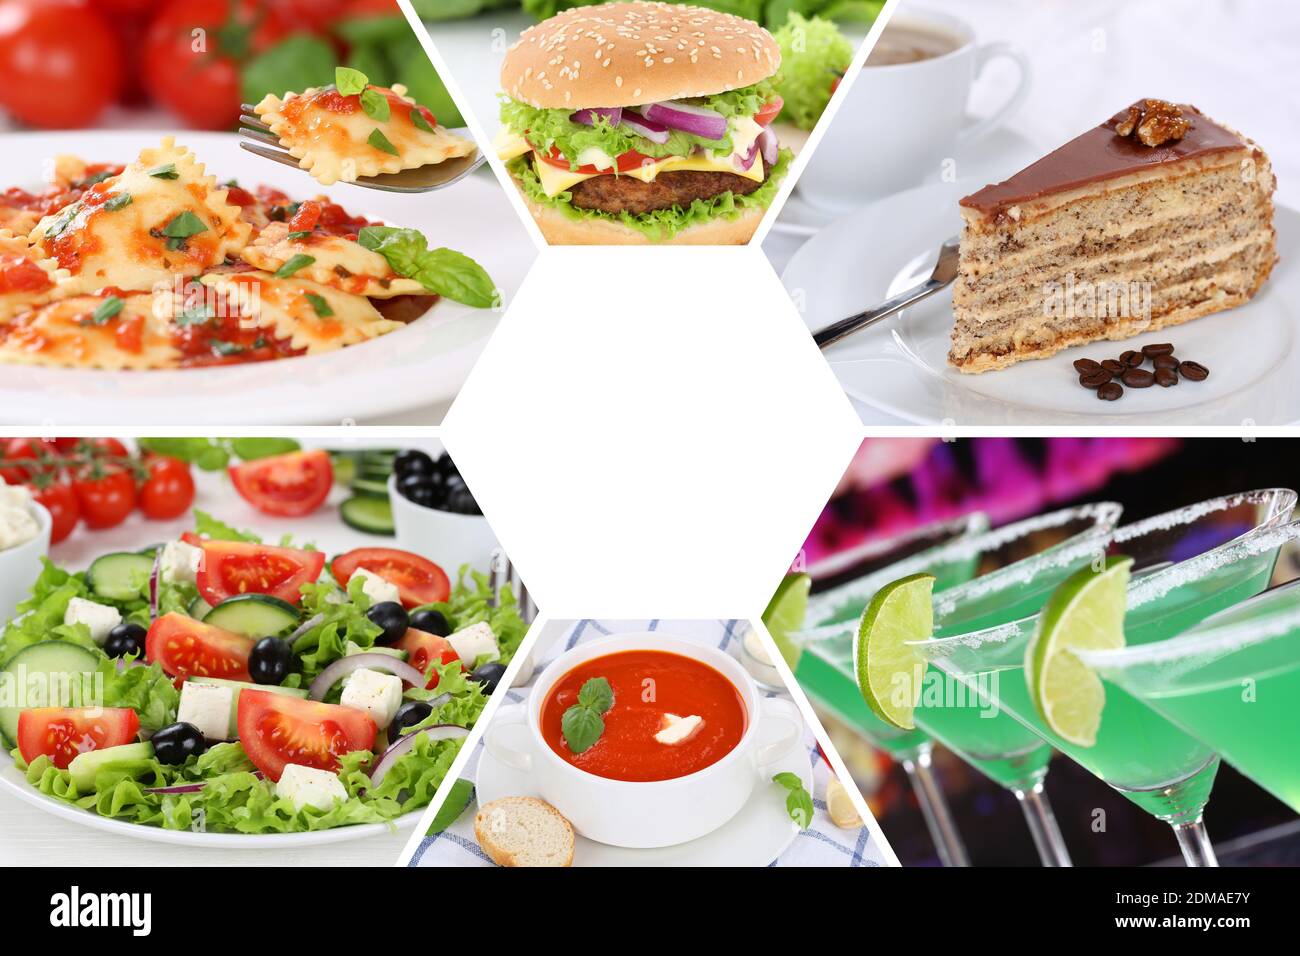 Sammlung Collage Essen und trinken Gerichte Getränke Restaurant Karte Set Stock Photo